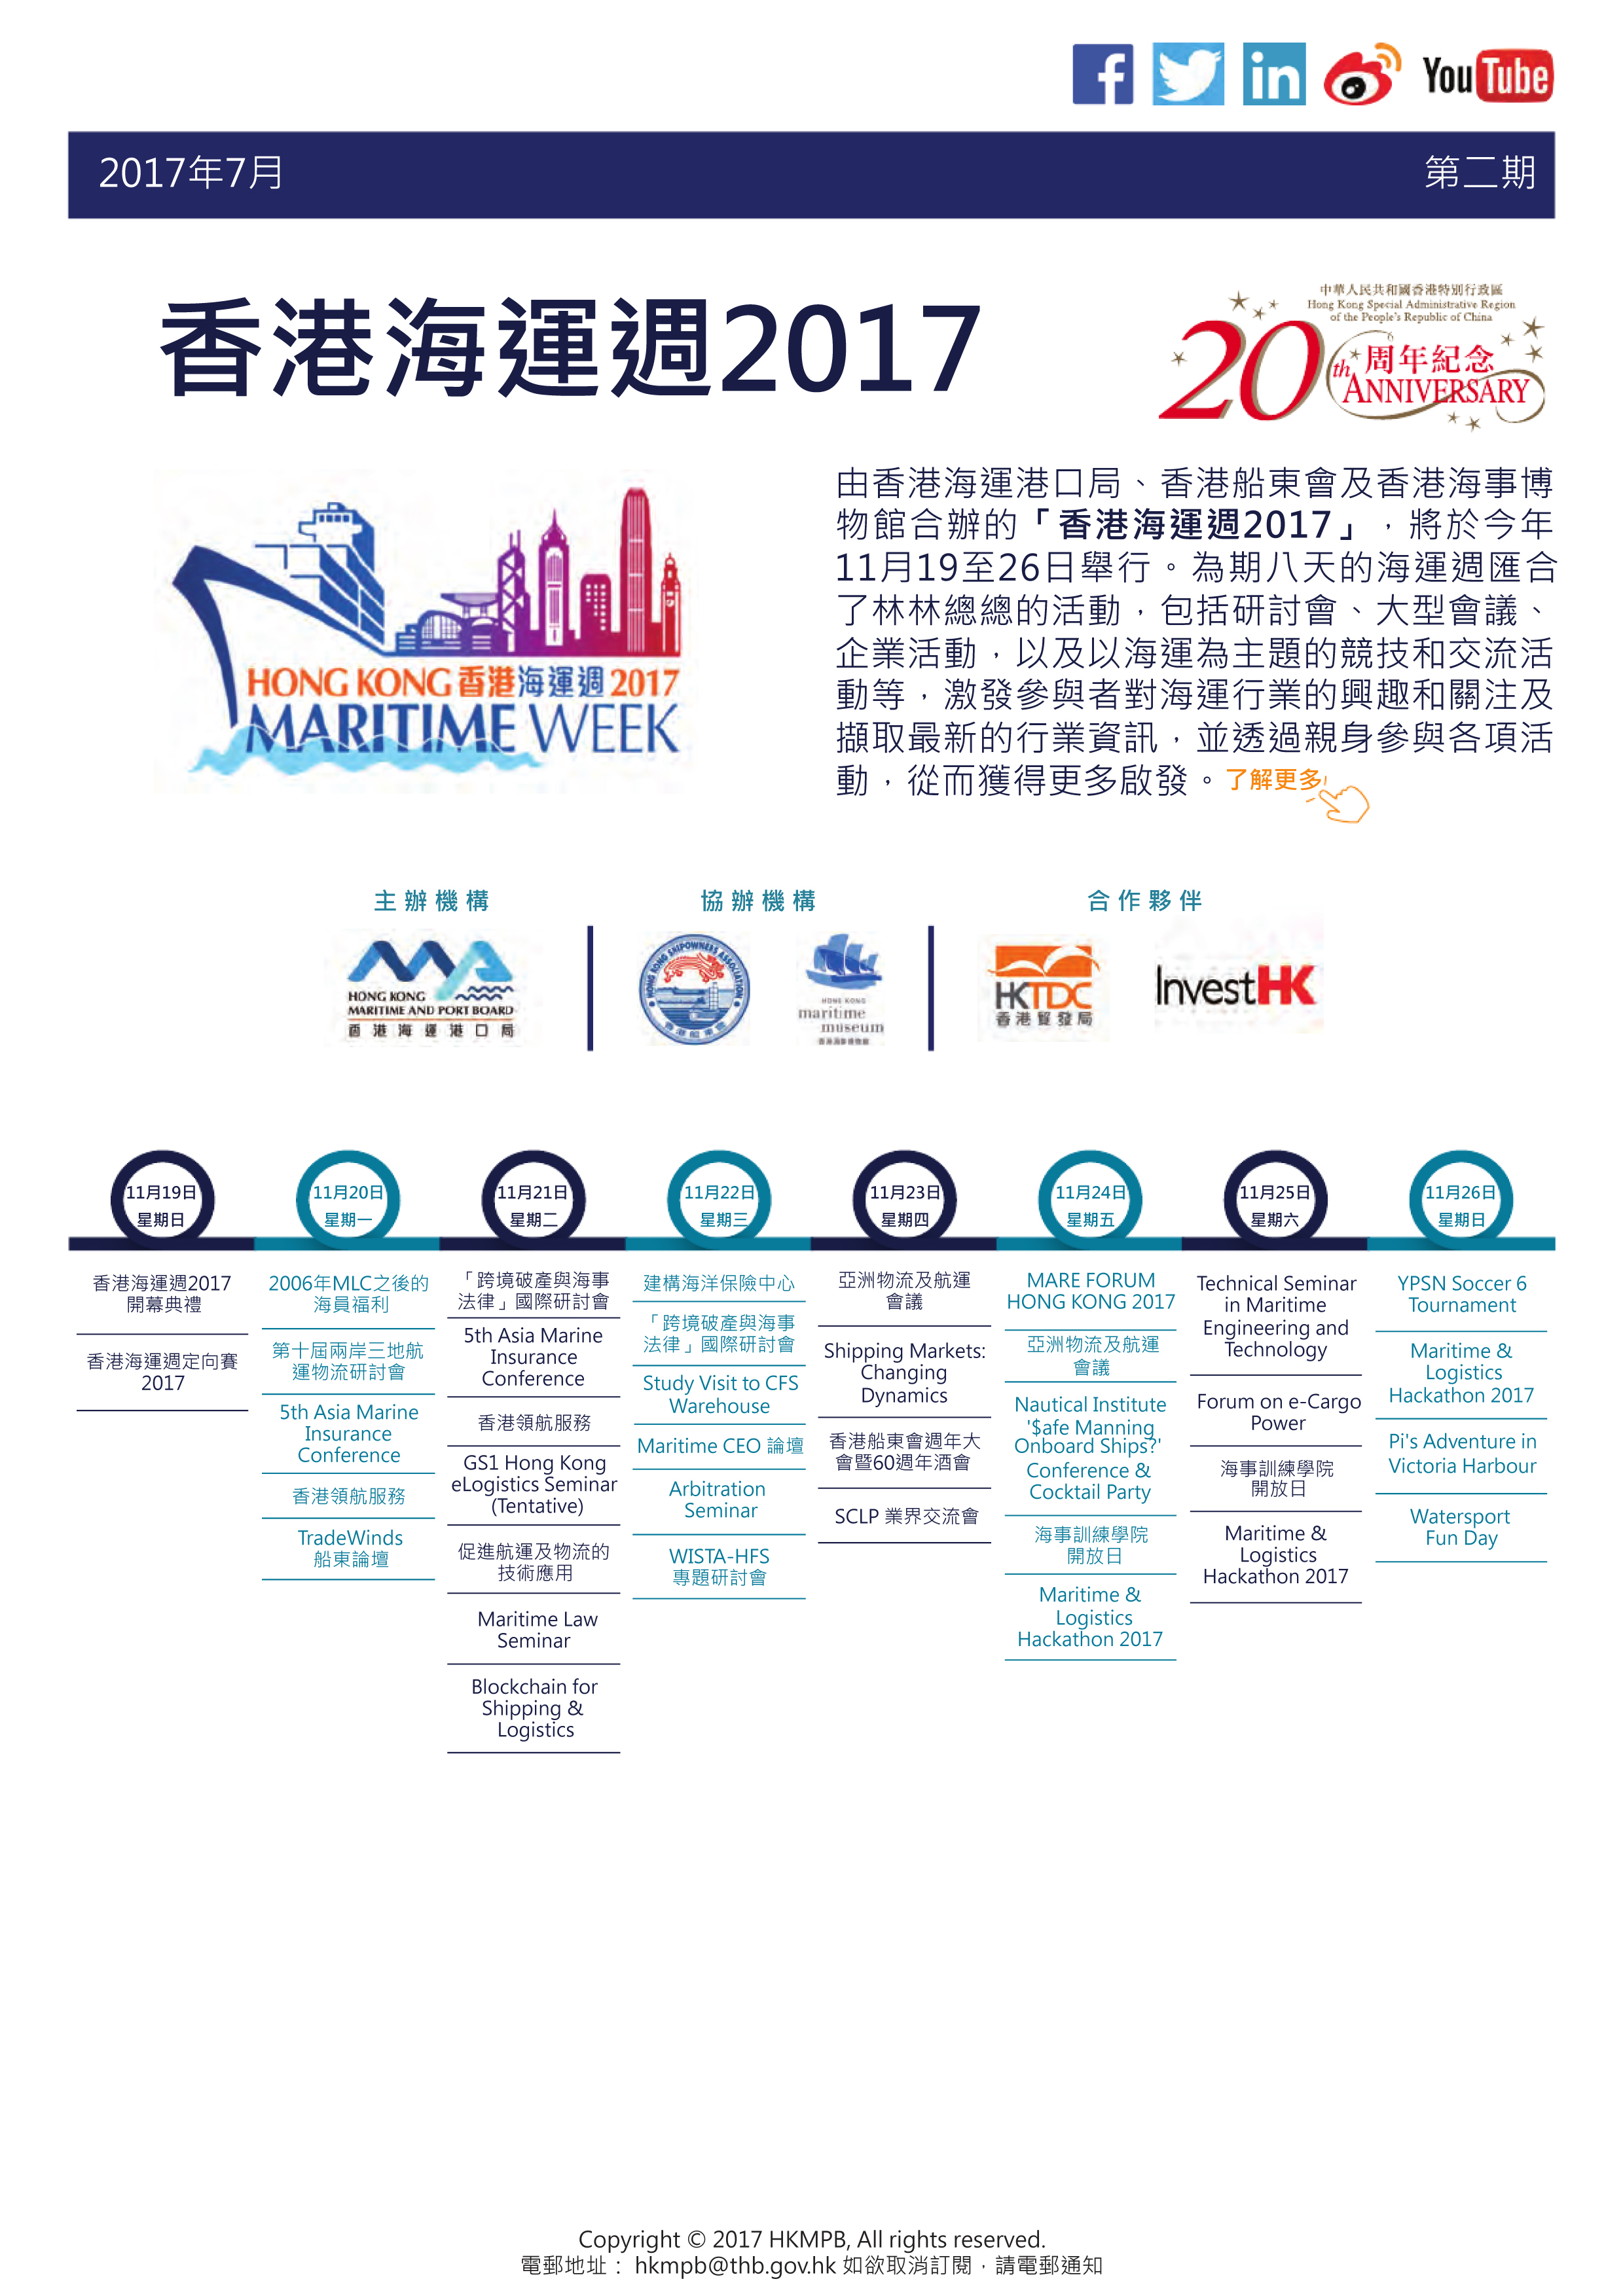 香港海運週2017 電子簡報第2期